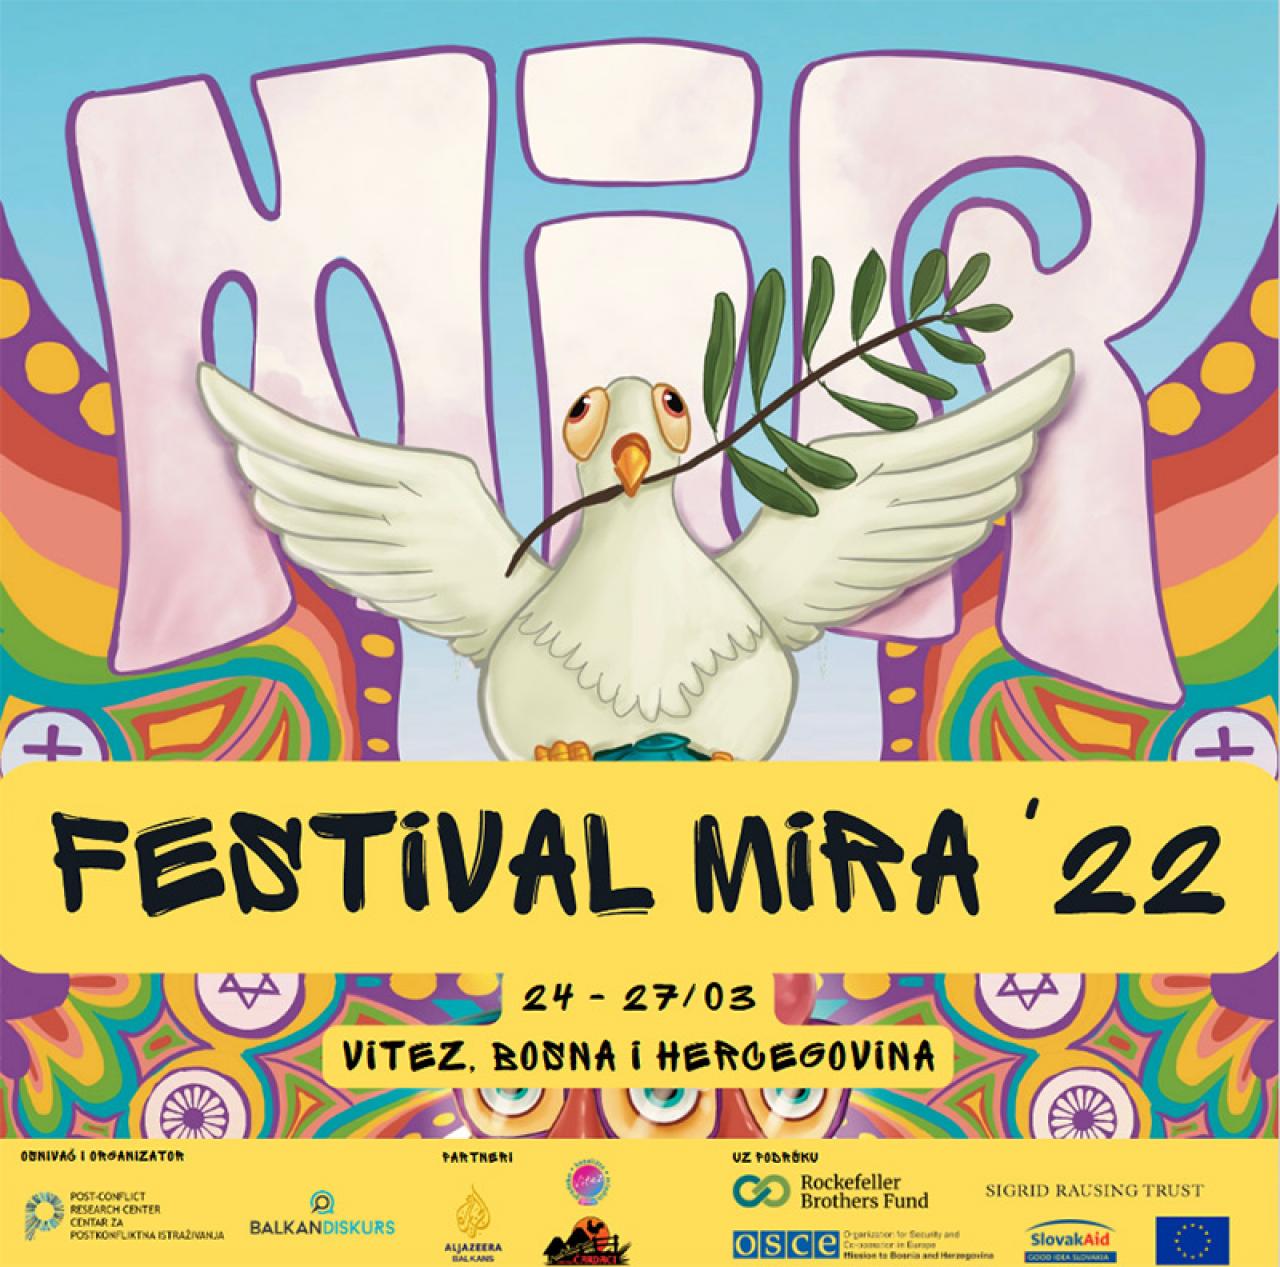 Festival mira - Festival MIRA u Vitezu